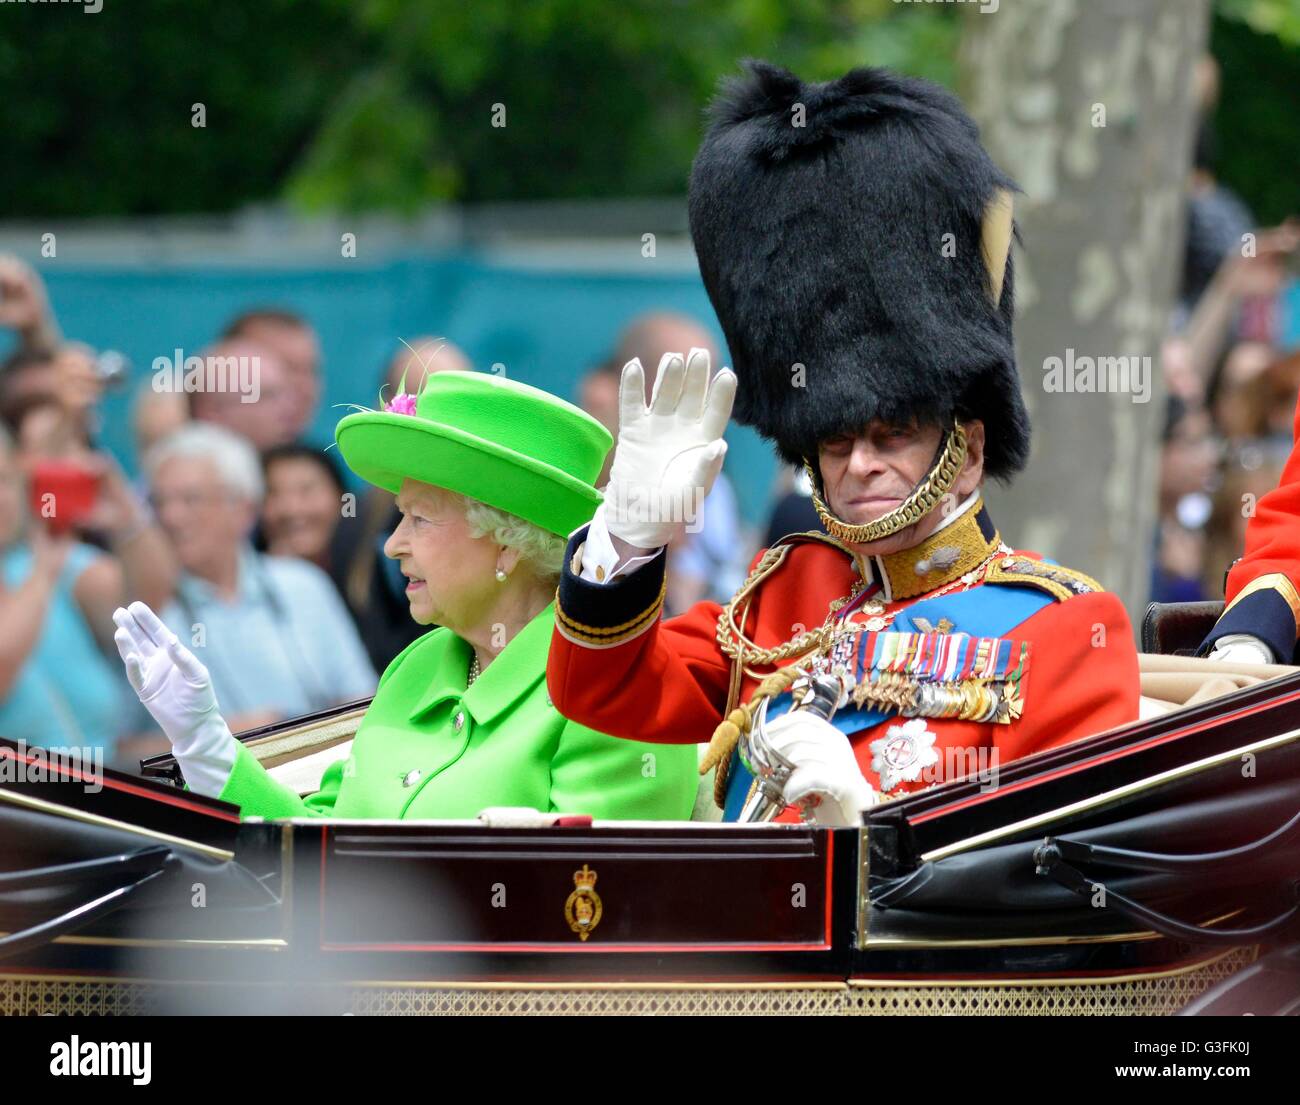 Londres, Reino Unido. 11 de junio, 2016. Trooping El Color - El desfile de cumpleaños de la Reina. La reina Isabel II y el príncipe Felipe de crédito: Dorset Media Service/Alamy Live News Foto de stock